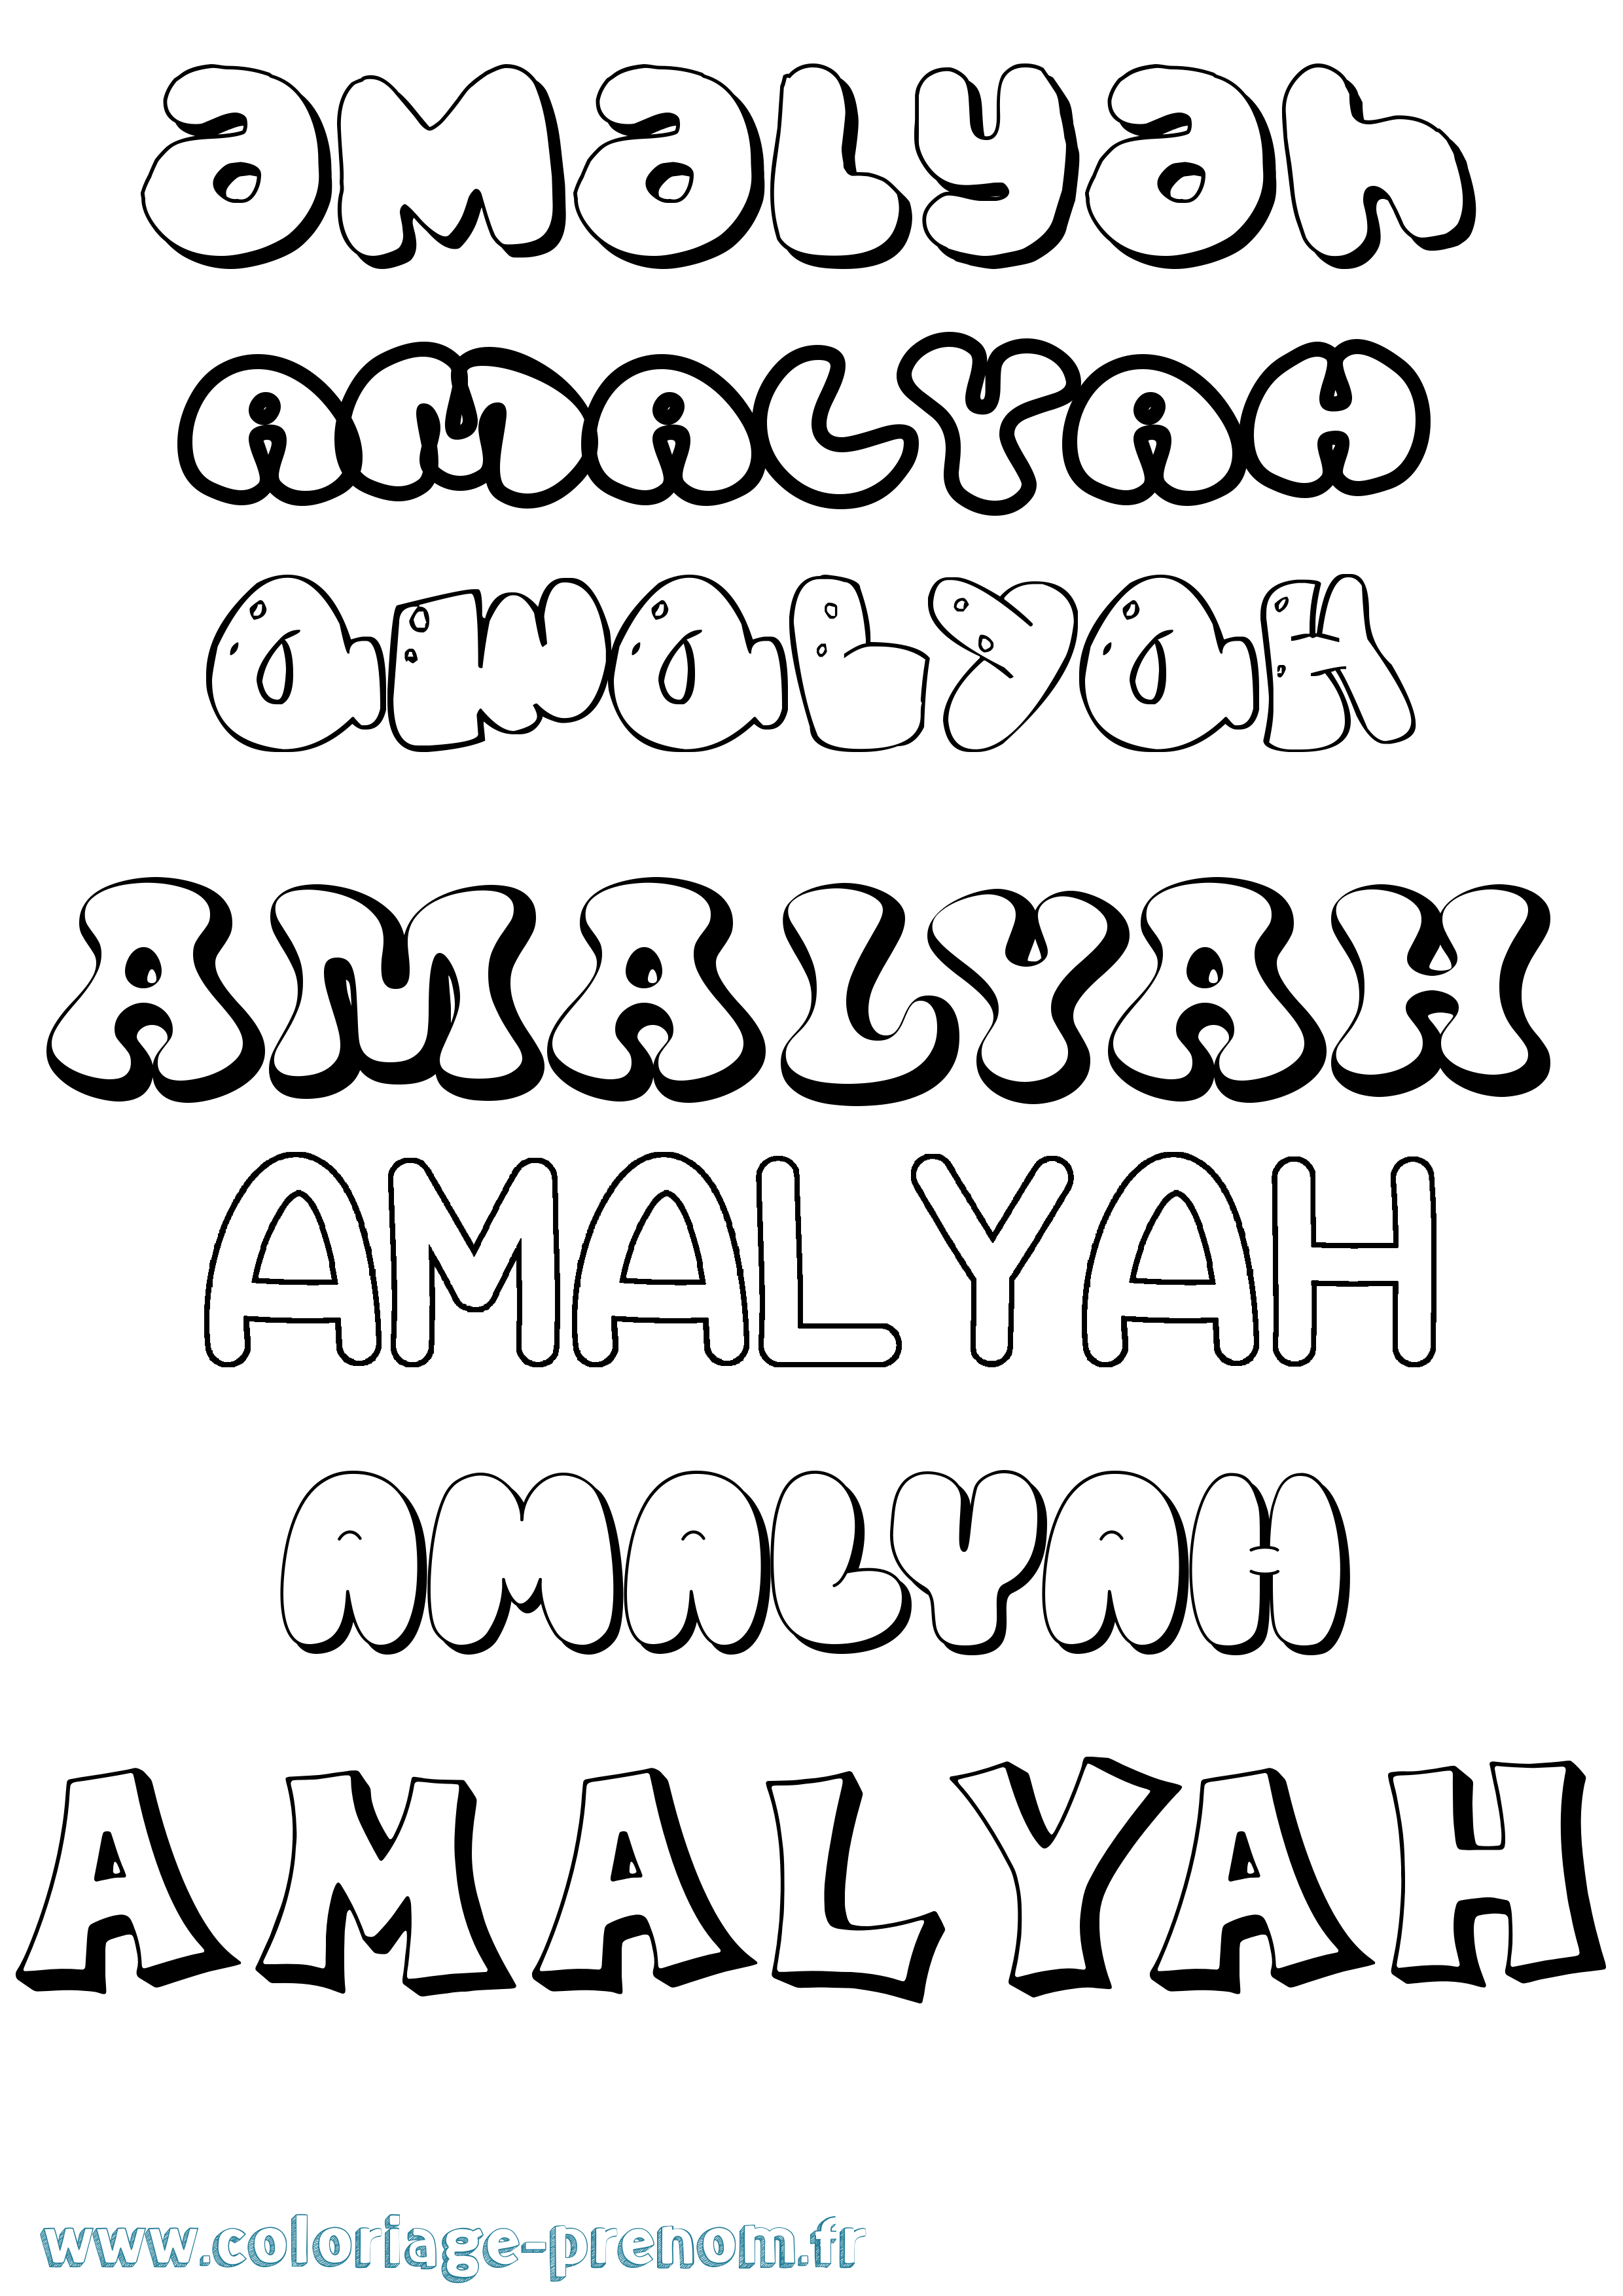 Coloriage prénom Amalyah Bubble